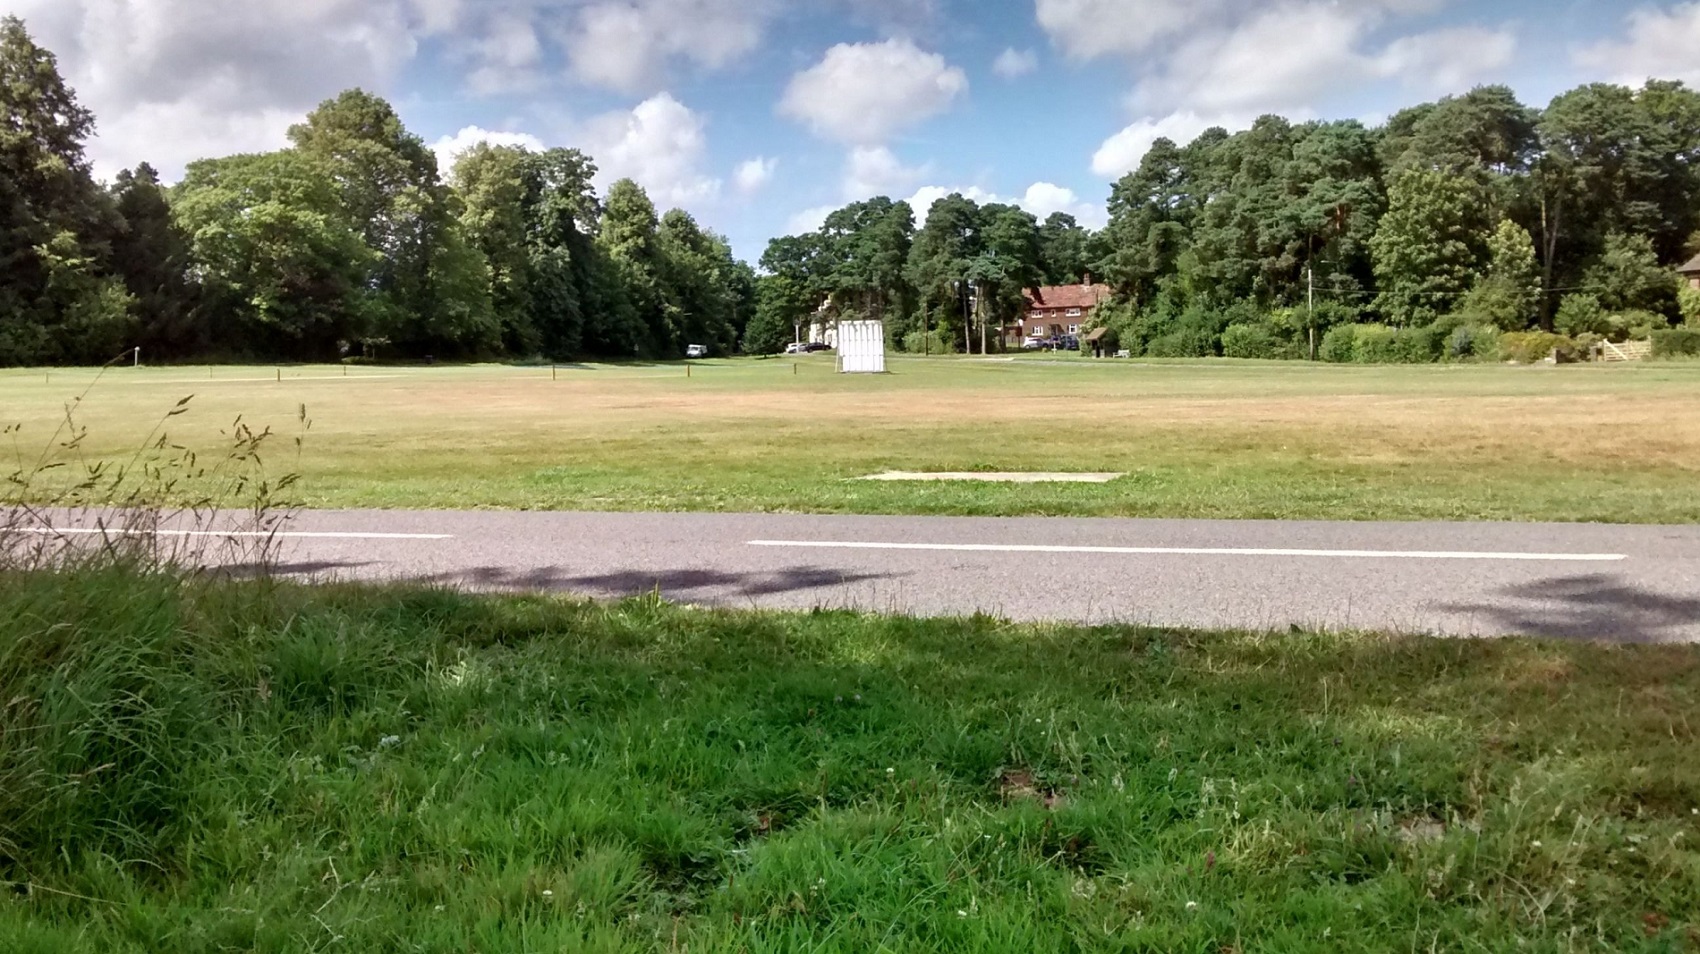 Village green summer cricket pitch